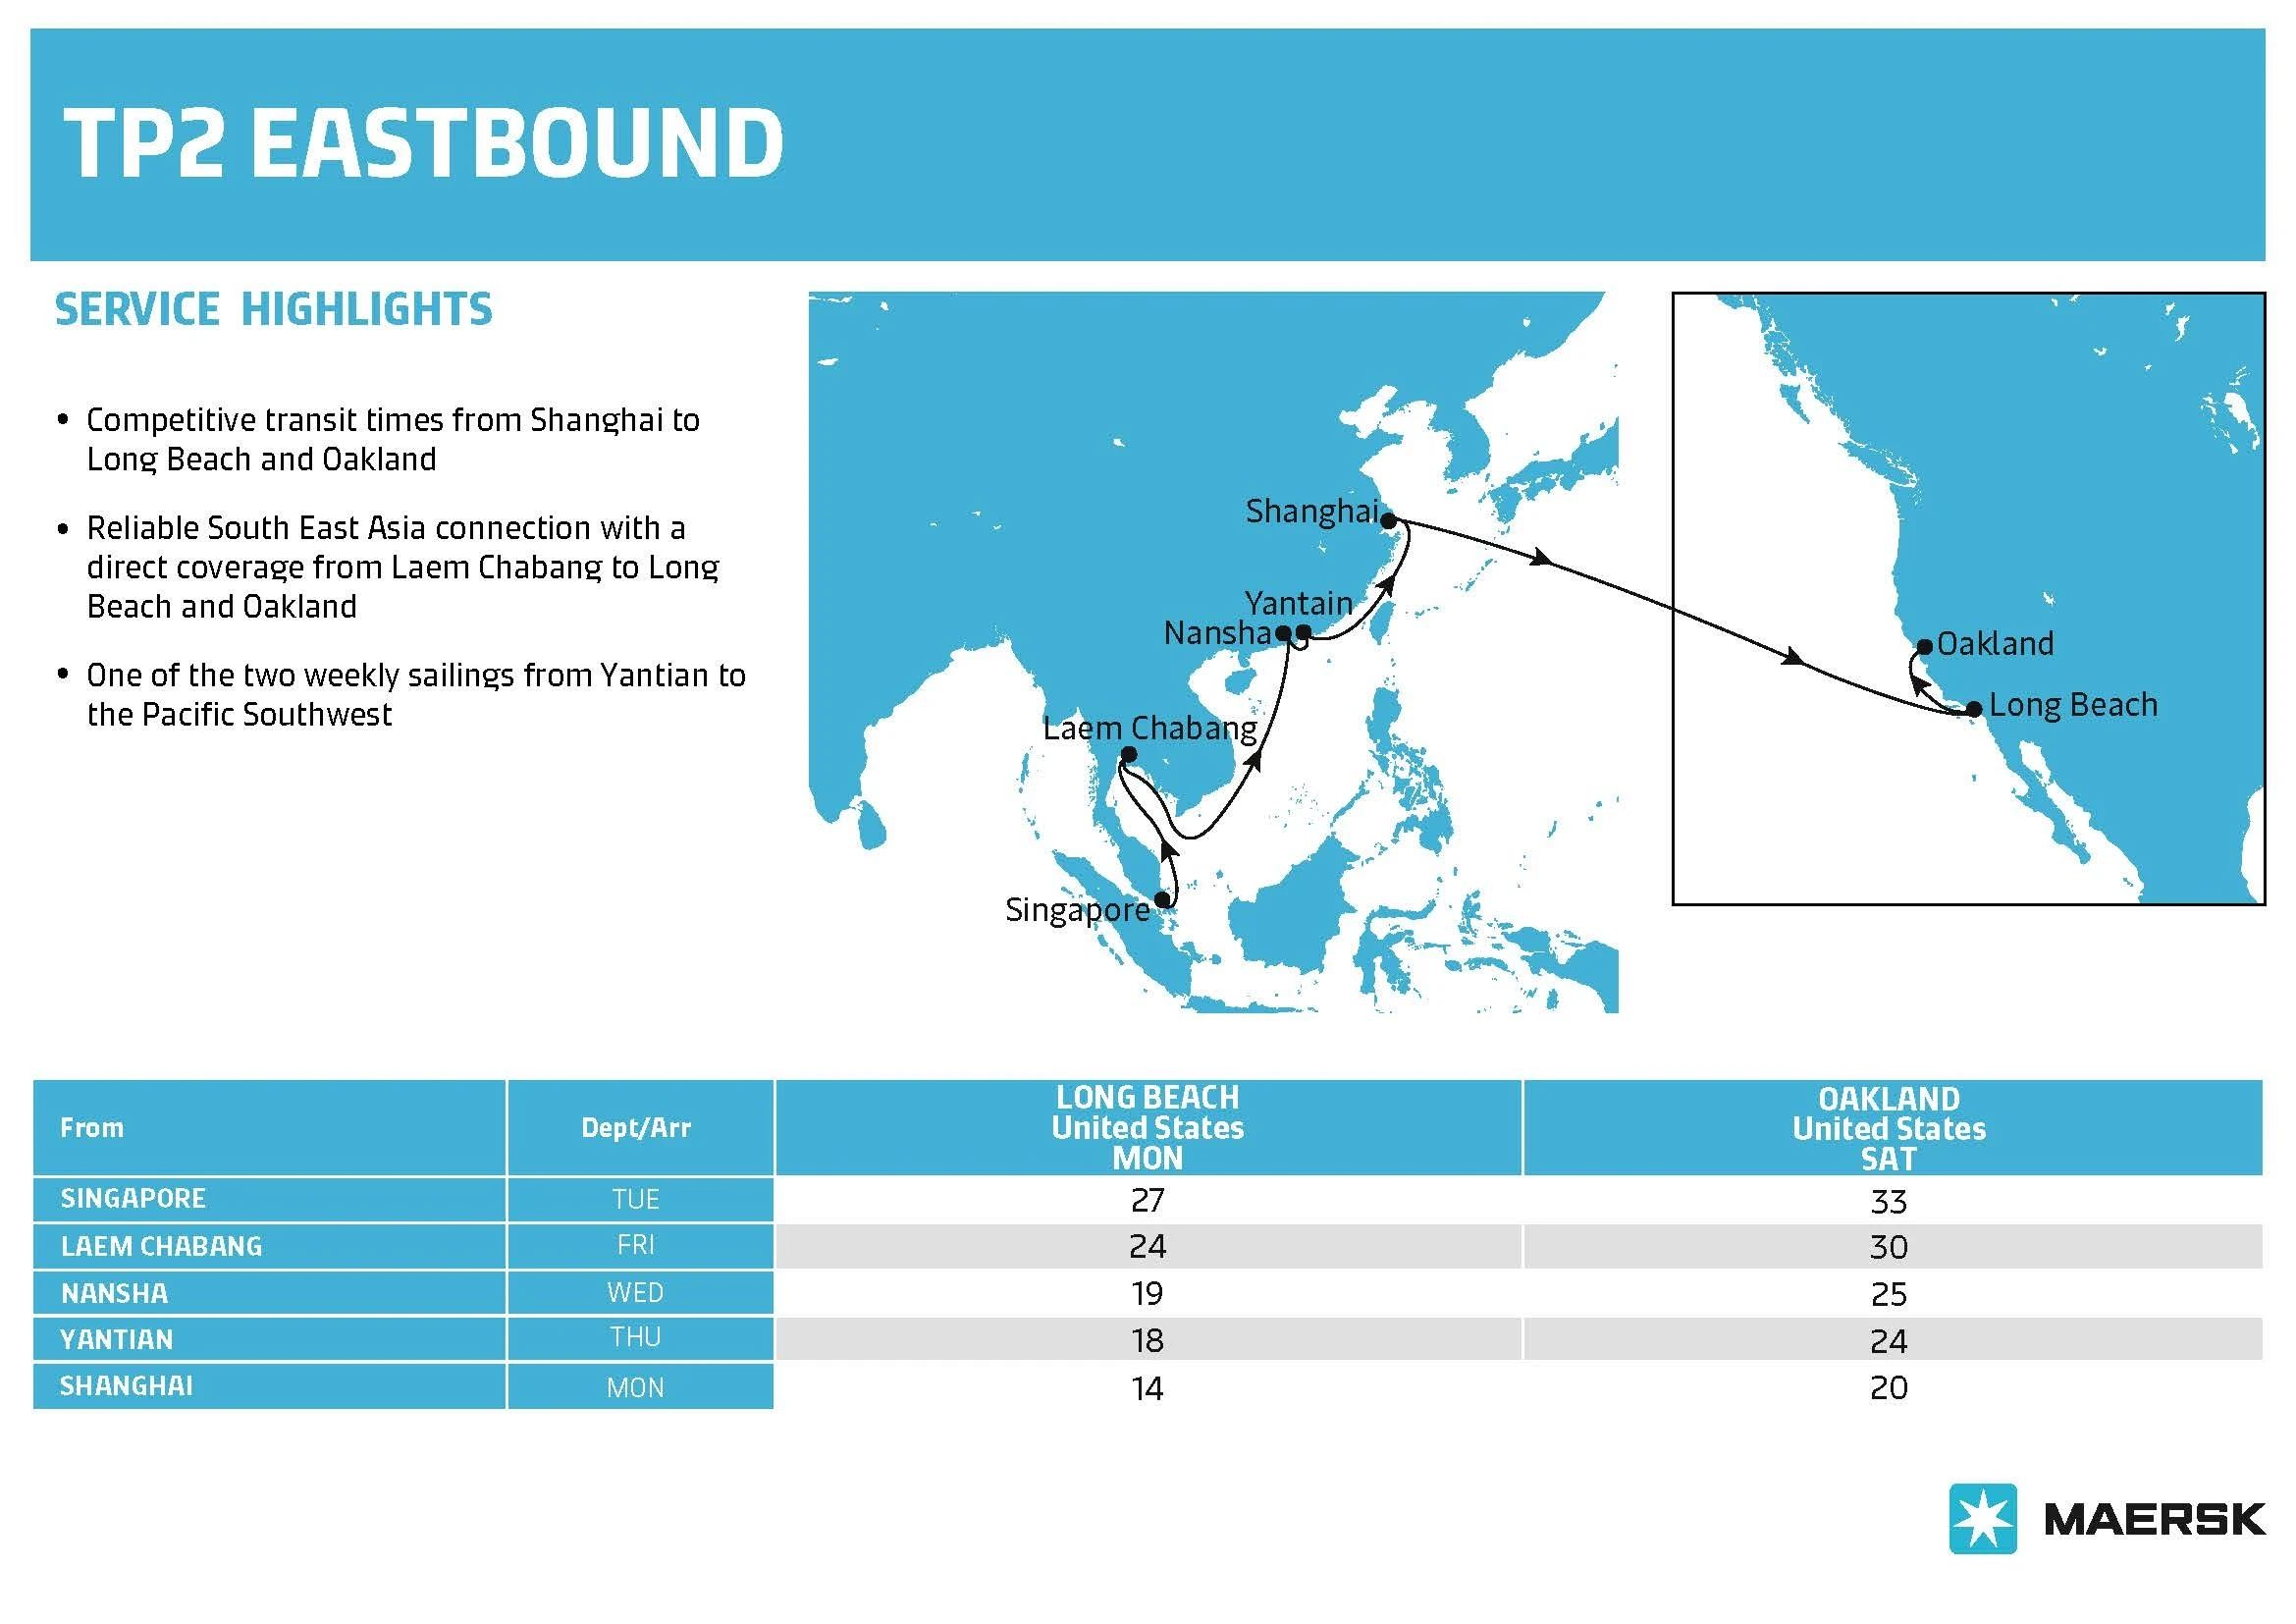 马士基优化跨太平洋航线及欧洲航线网络，进一步提升准班率